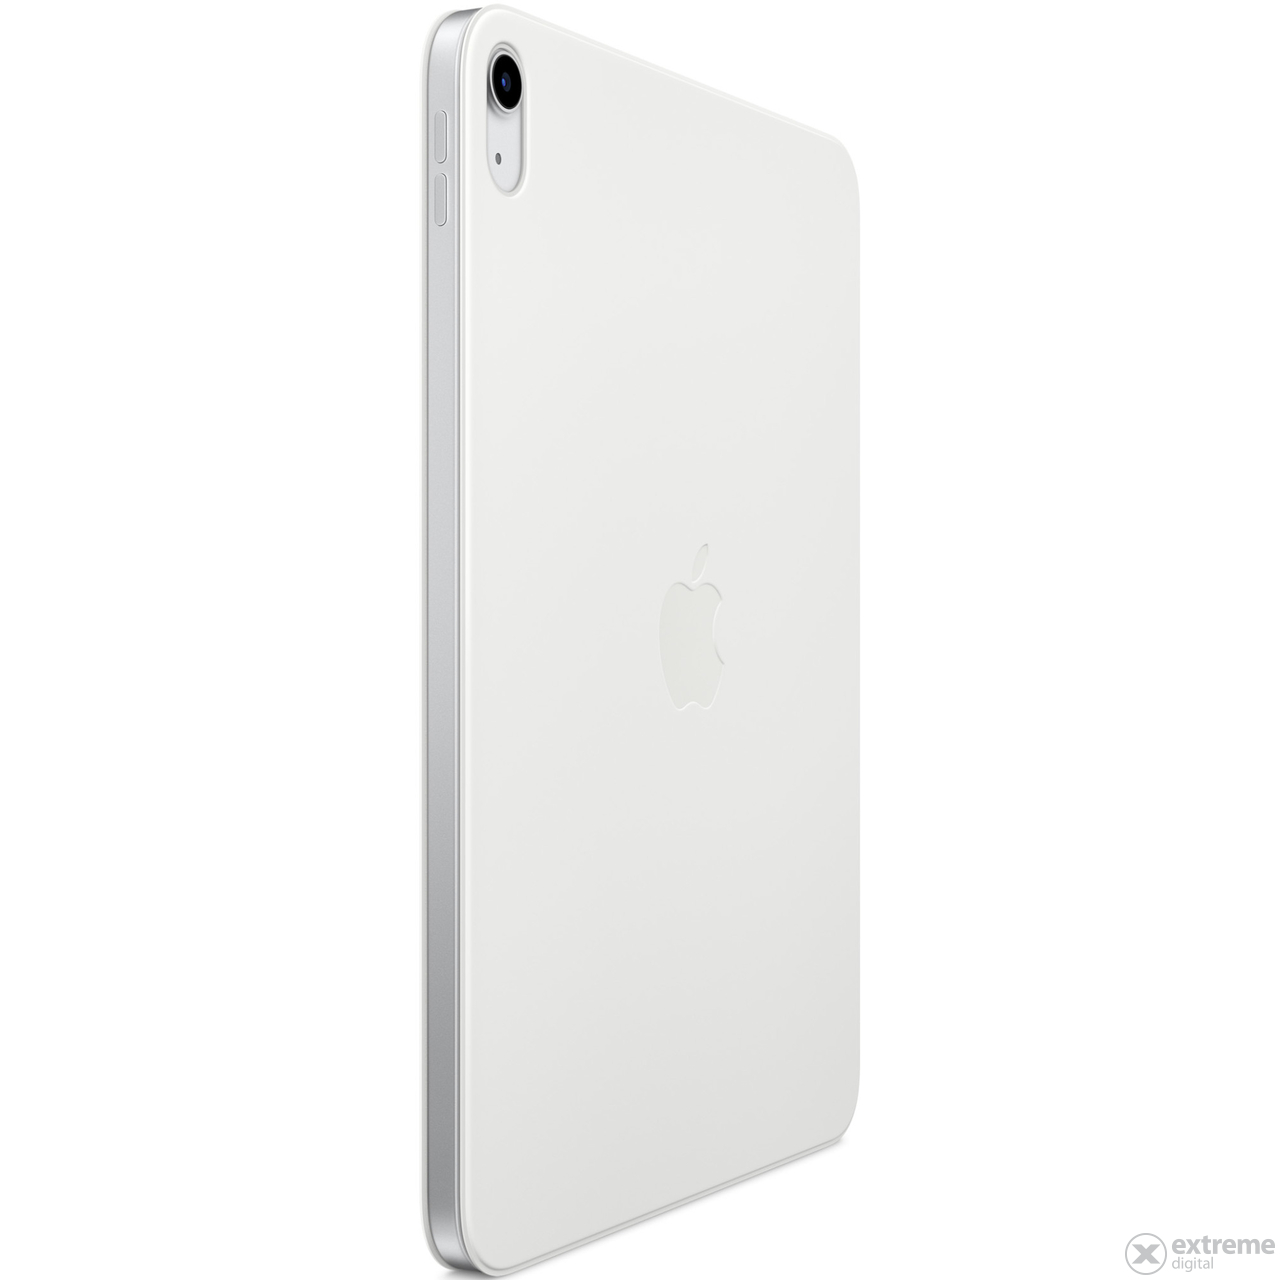 Apple Smart Folio futrola za iPad desete generacije, bijela